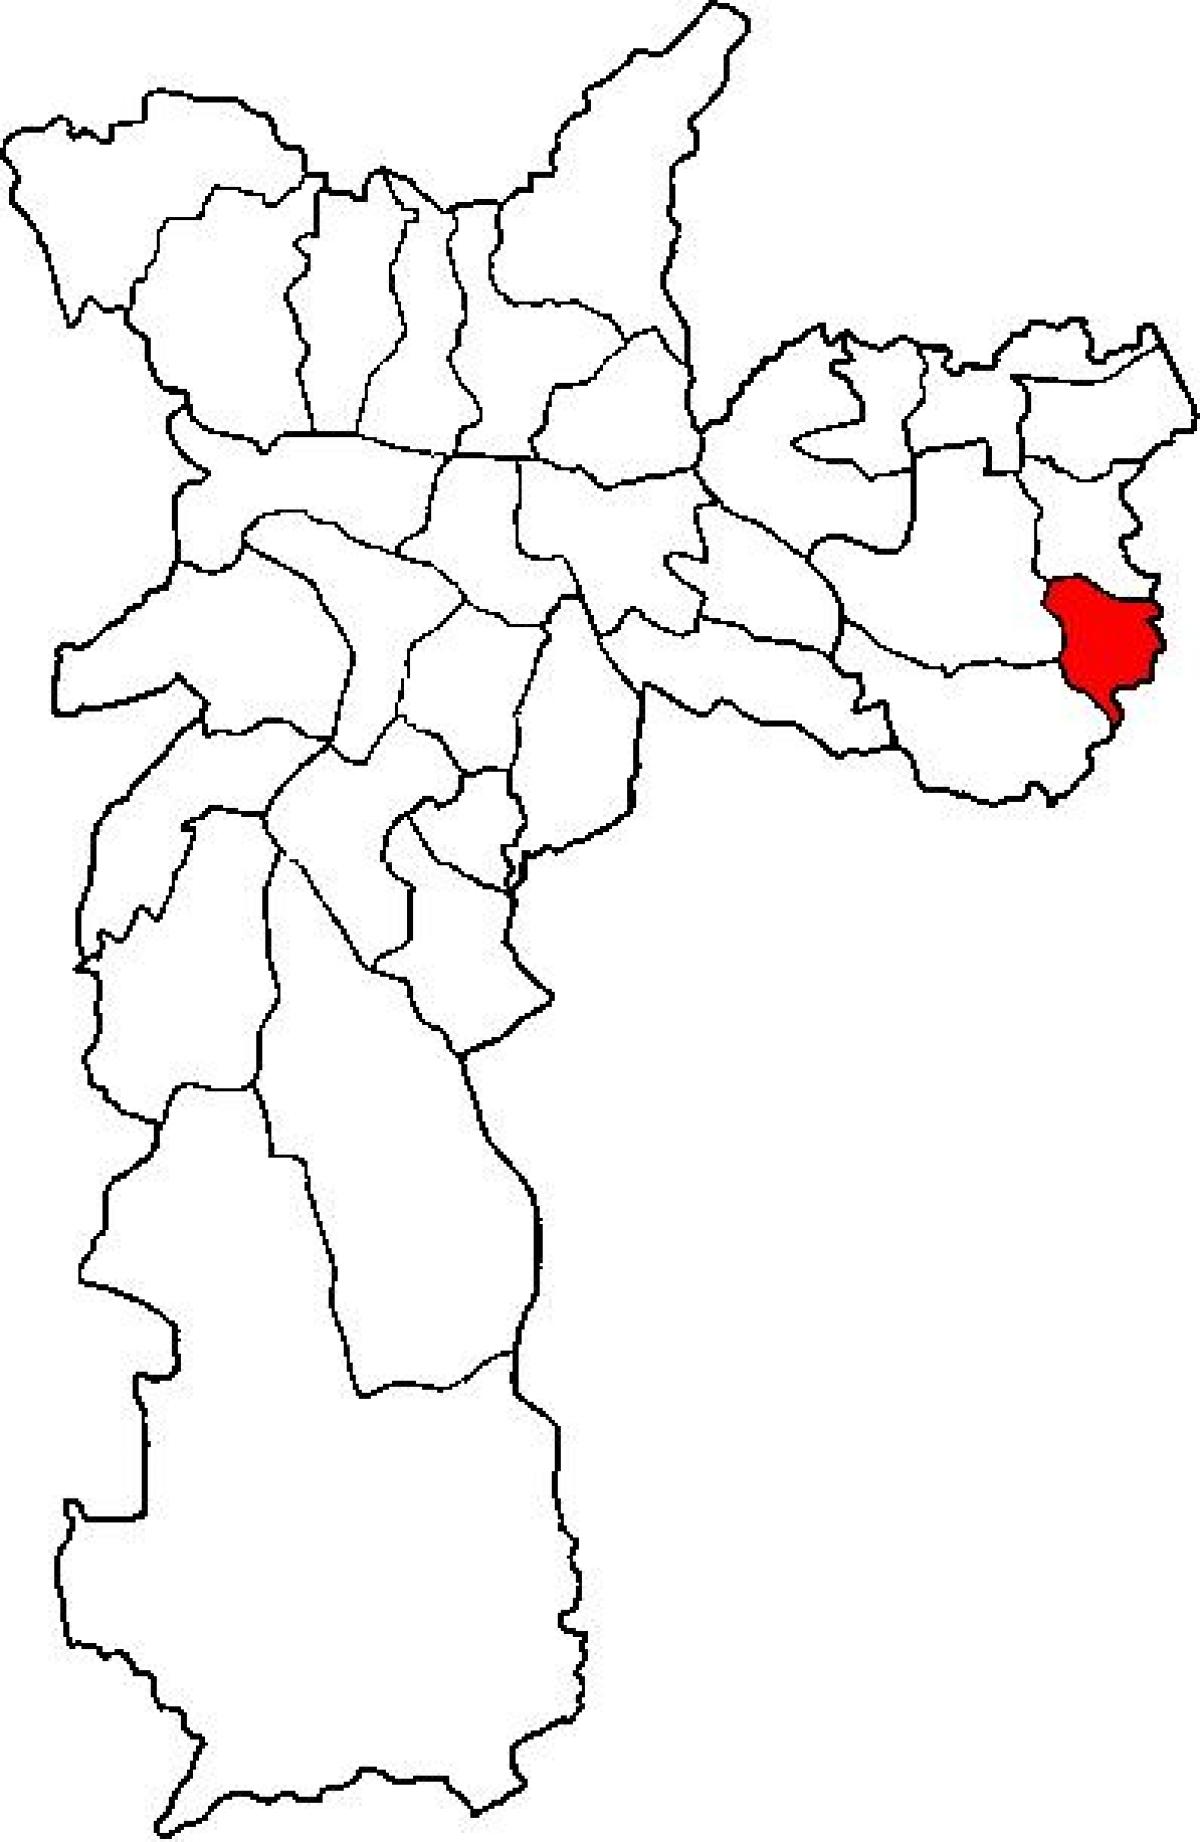 નકશો Cidade Tiradentes જિલ્લા